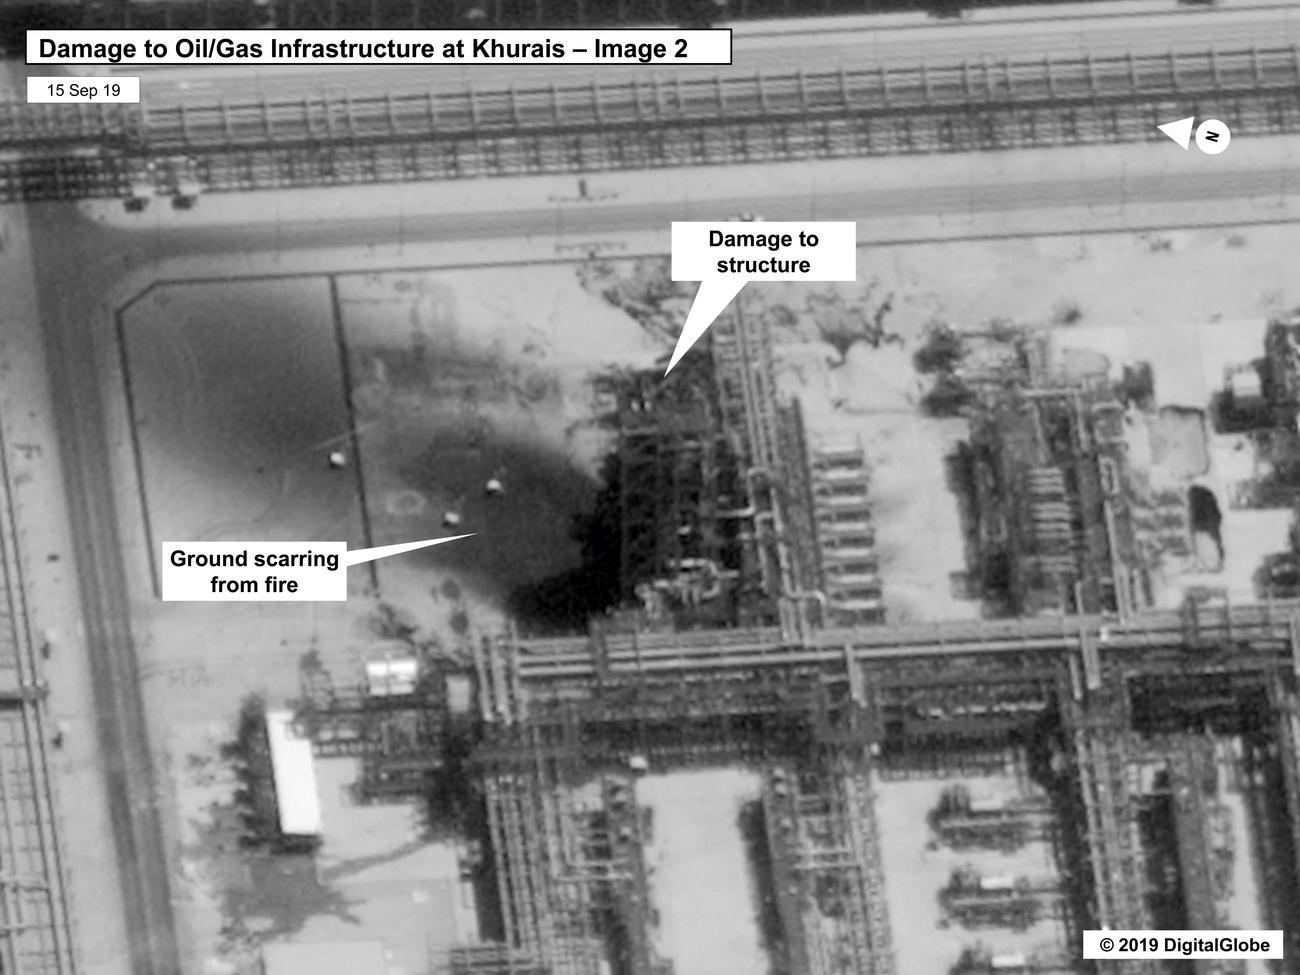 Le sol brûlé et une structure endommagée à Khurais (image 2, détail). [Keystone/EPA/Digital Globe - U.S. Government]